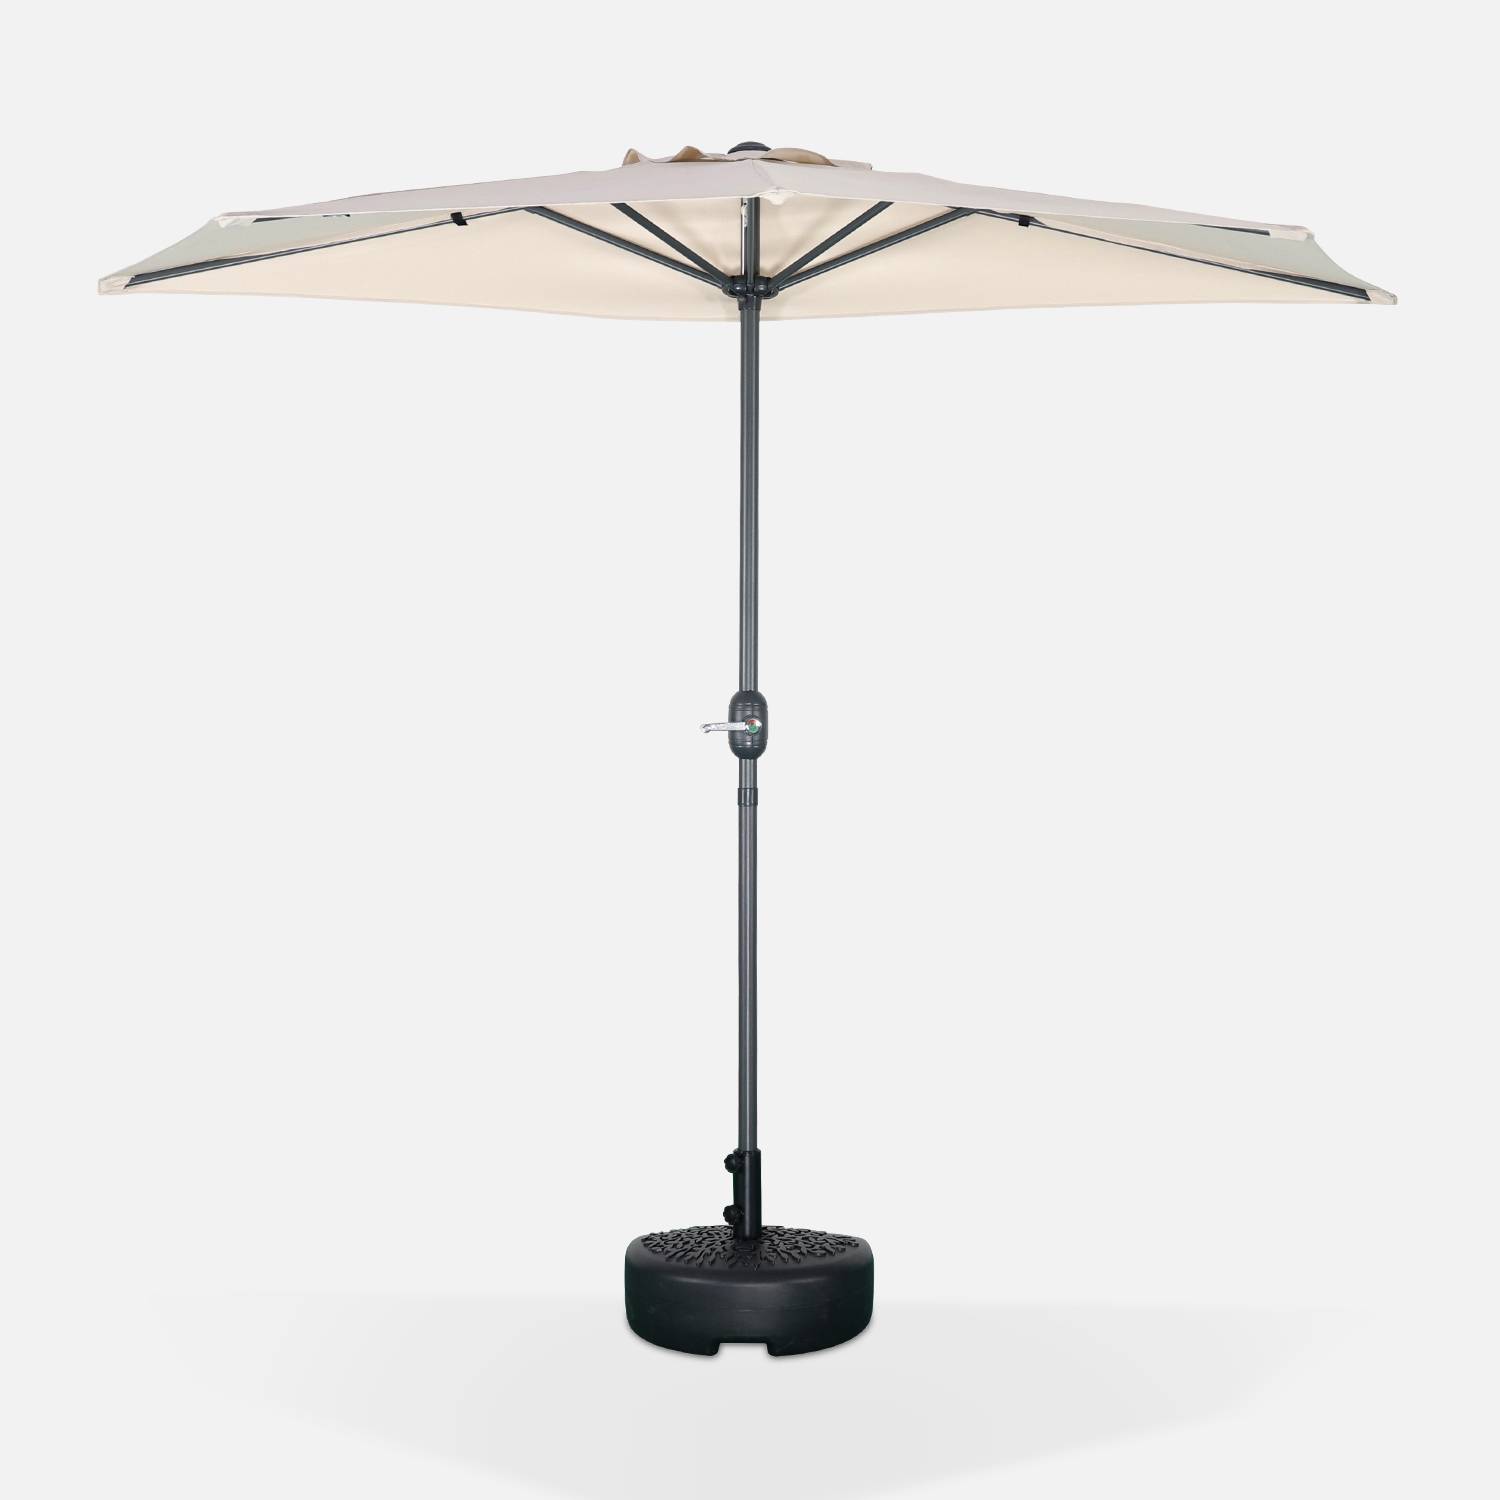  Parasol de balcon Ø250cm  – CALVI – Demi-parasol droit, mât en aluminium avec manivelle d’ouverture, toile sable Photo2